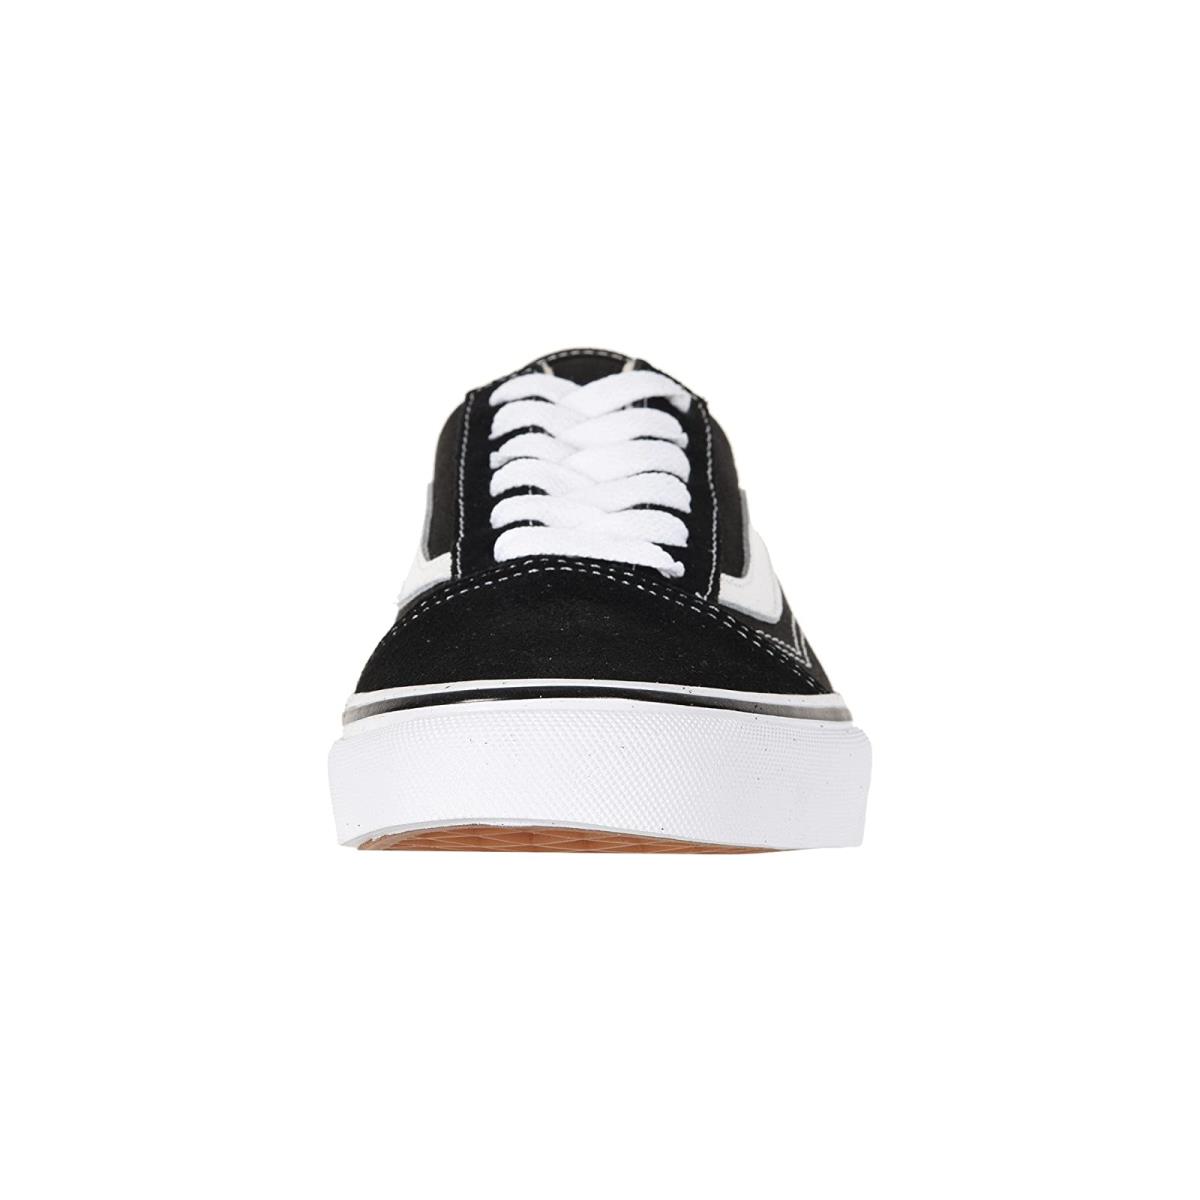 Unisex Sneakers Athletic Shoes Vans Old Skool Mule Black/True White